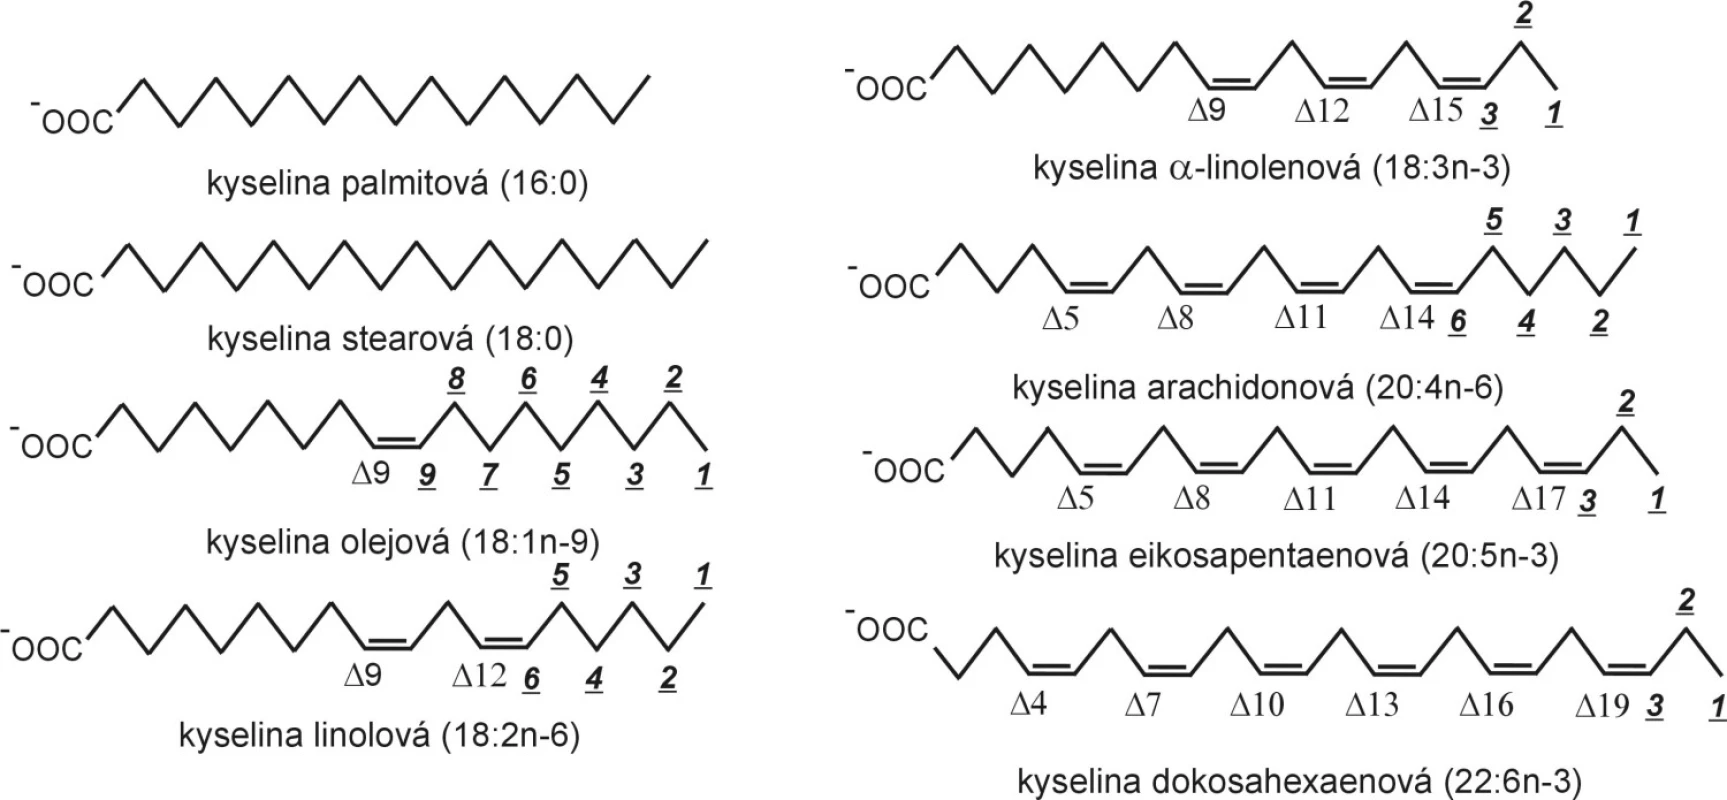 Strukturní vzorce mastných kyselin.
Při elongaci a desaturaci zůstává zachováno značení omega (n-), zatímco značení delta se mění; elongace i beta-oxidace probíhají na karboxylovém konci řetězce.